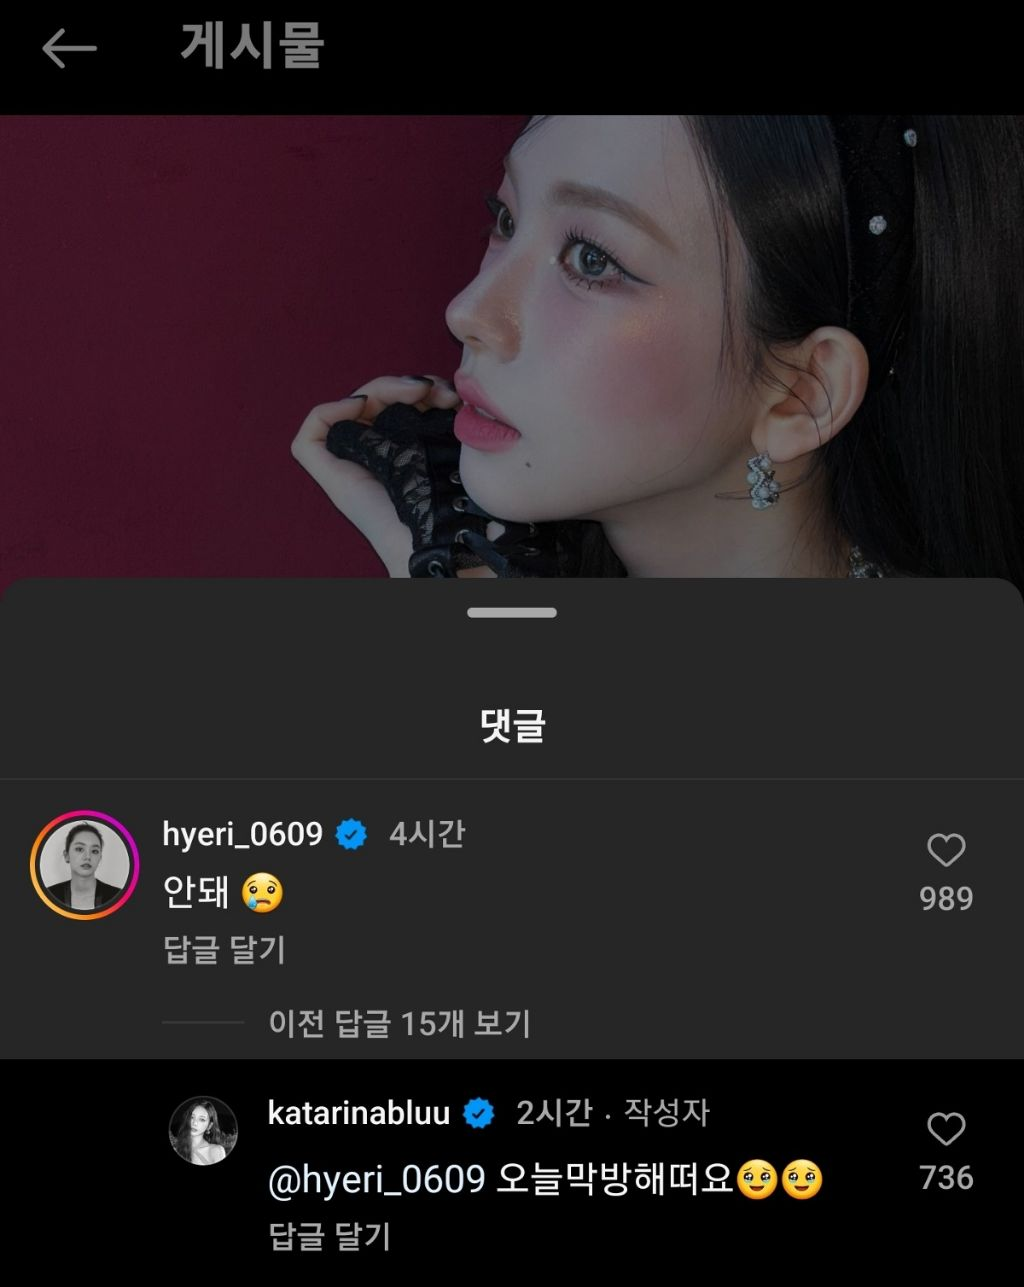 La personalidad 'amigable' de Hyeri de Girl's Day genera hilo de apreciación + Stan habla sobre la popularidad del ídolo en Corea